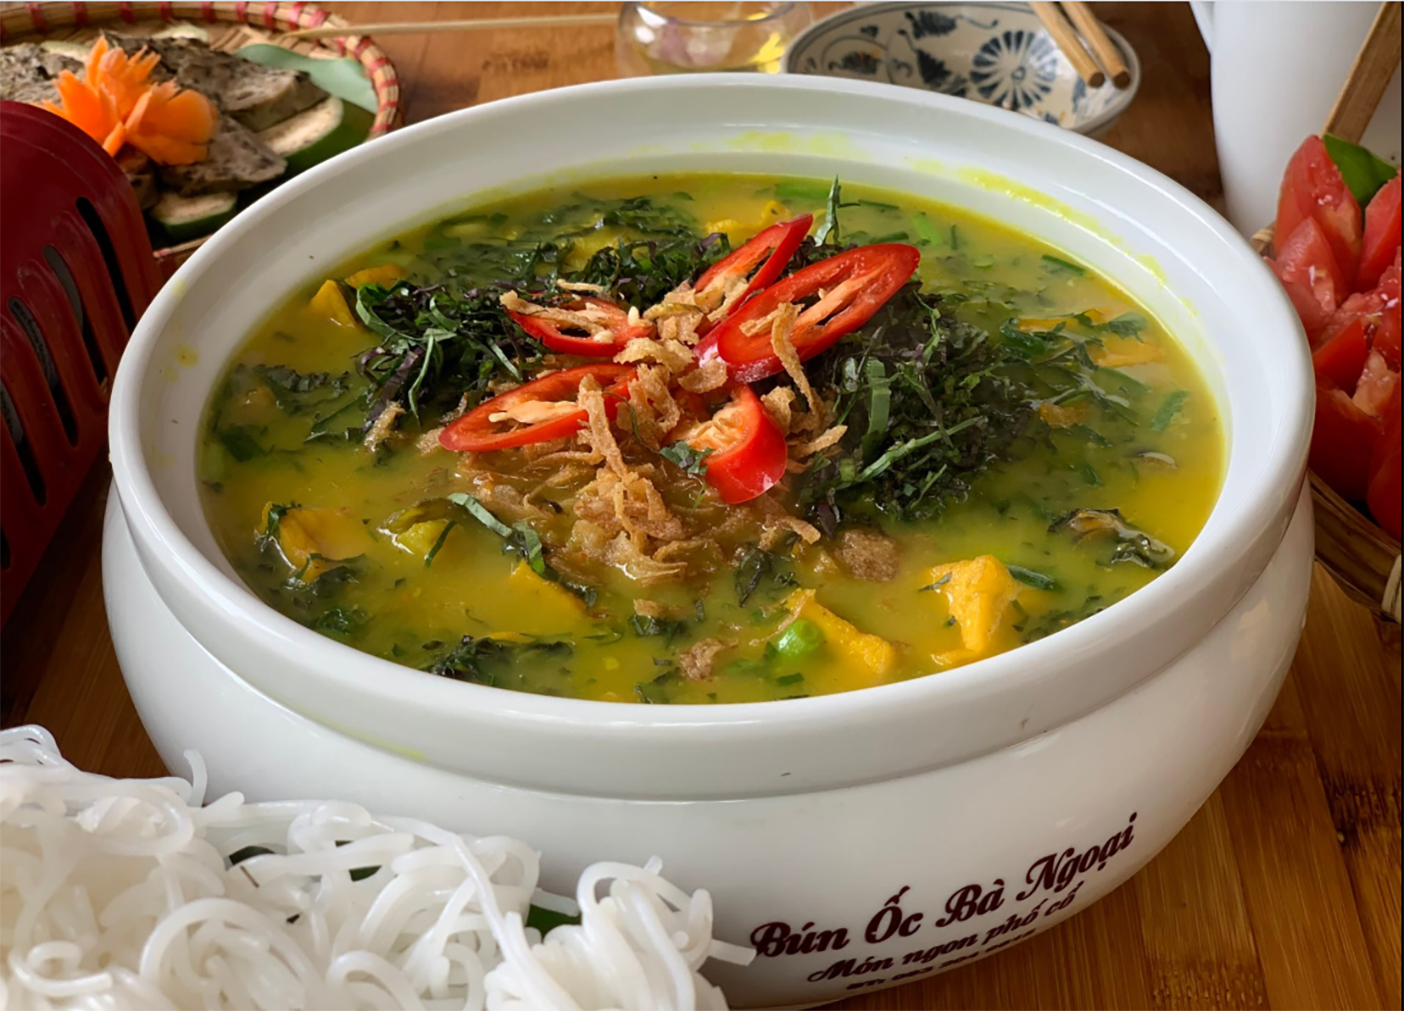 Ăm thực Việt Nam không chỉ là những món ăn ngon và đa dạng mà còn là nét đặc trưng của văn hóa đất nước. Hình ảnh liên quan đến ẩm thực Việt Nam sẽ làm cho bạn muốn khám phá và trải nghiệm sống động hơn về ẩm thực đặc trưng của Việt Nam.